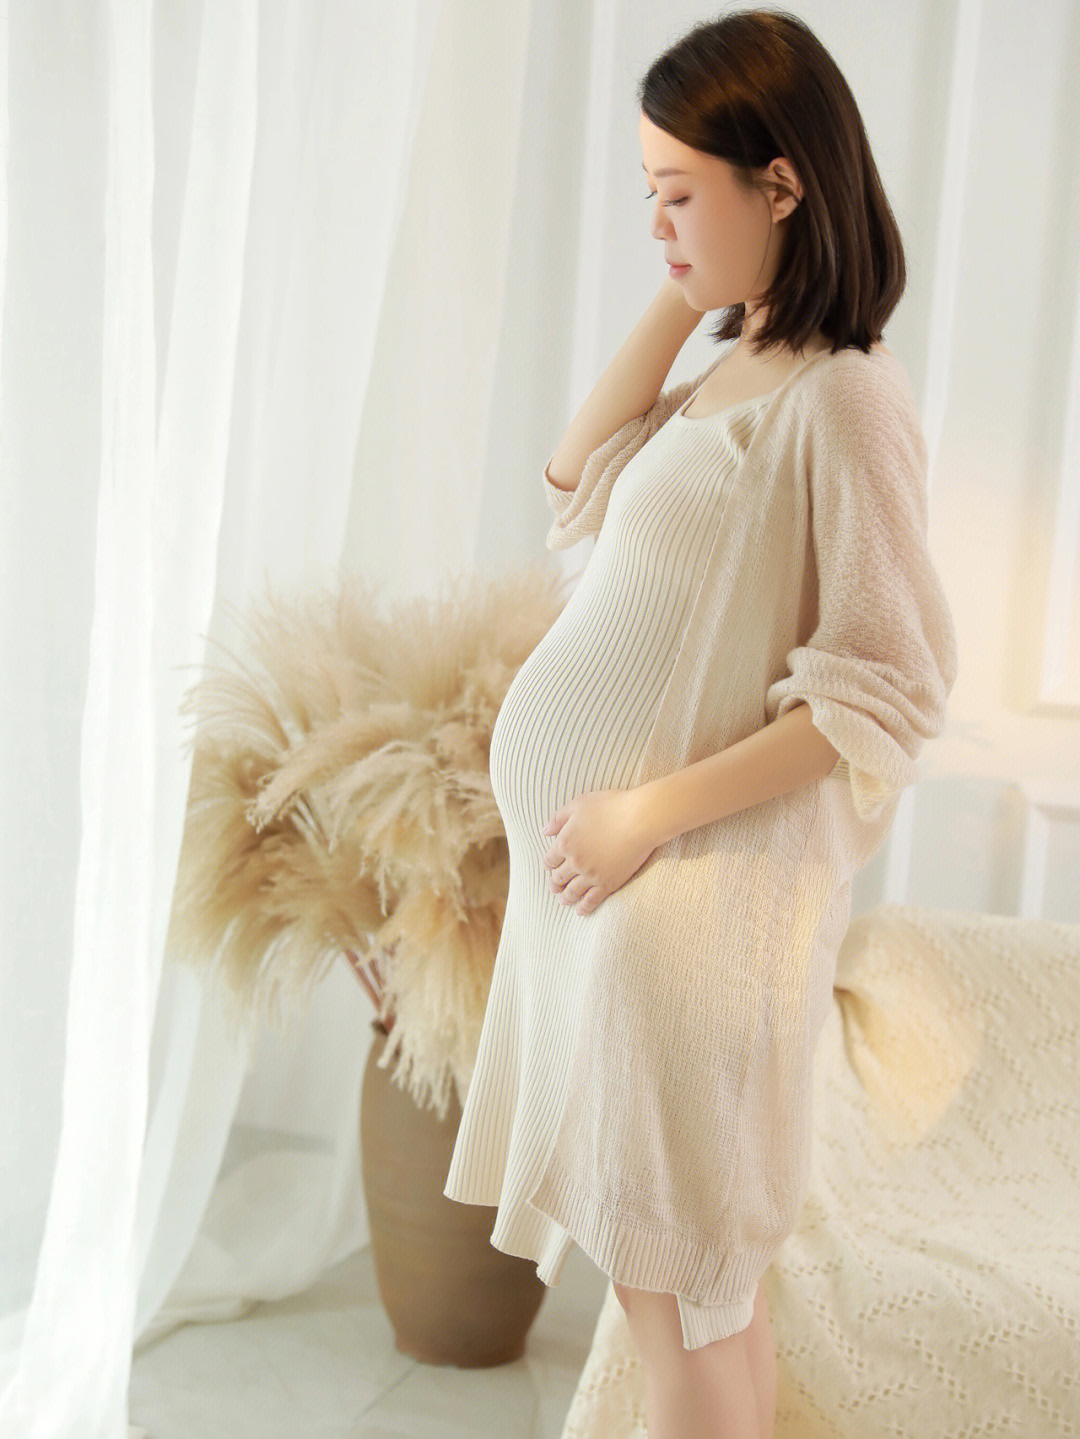 韩系孕妇照写真复古孕照午后阳光